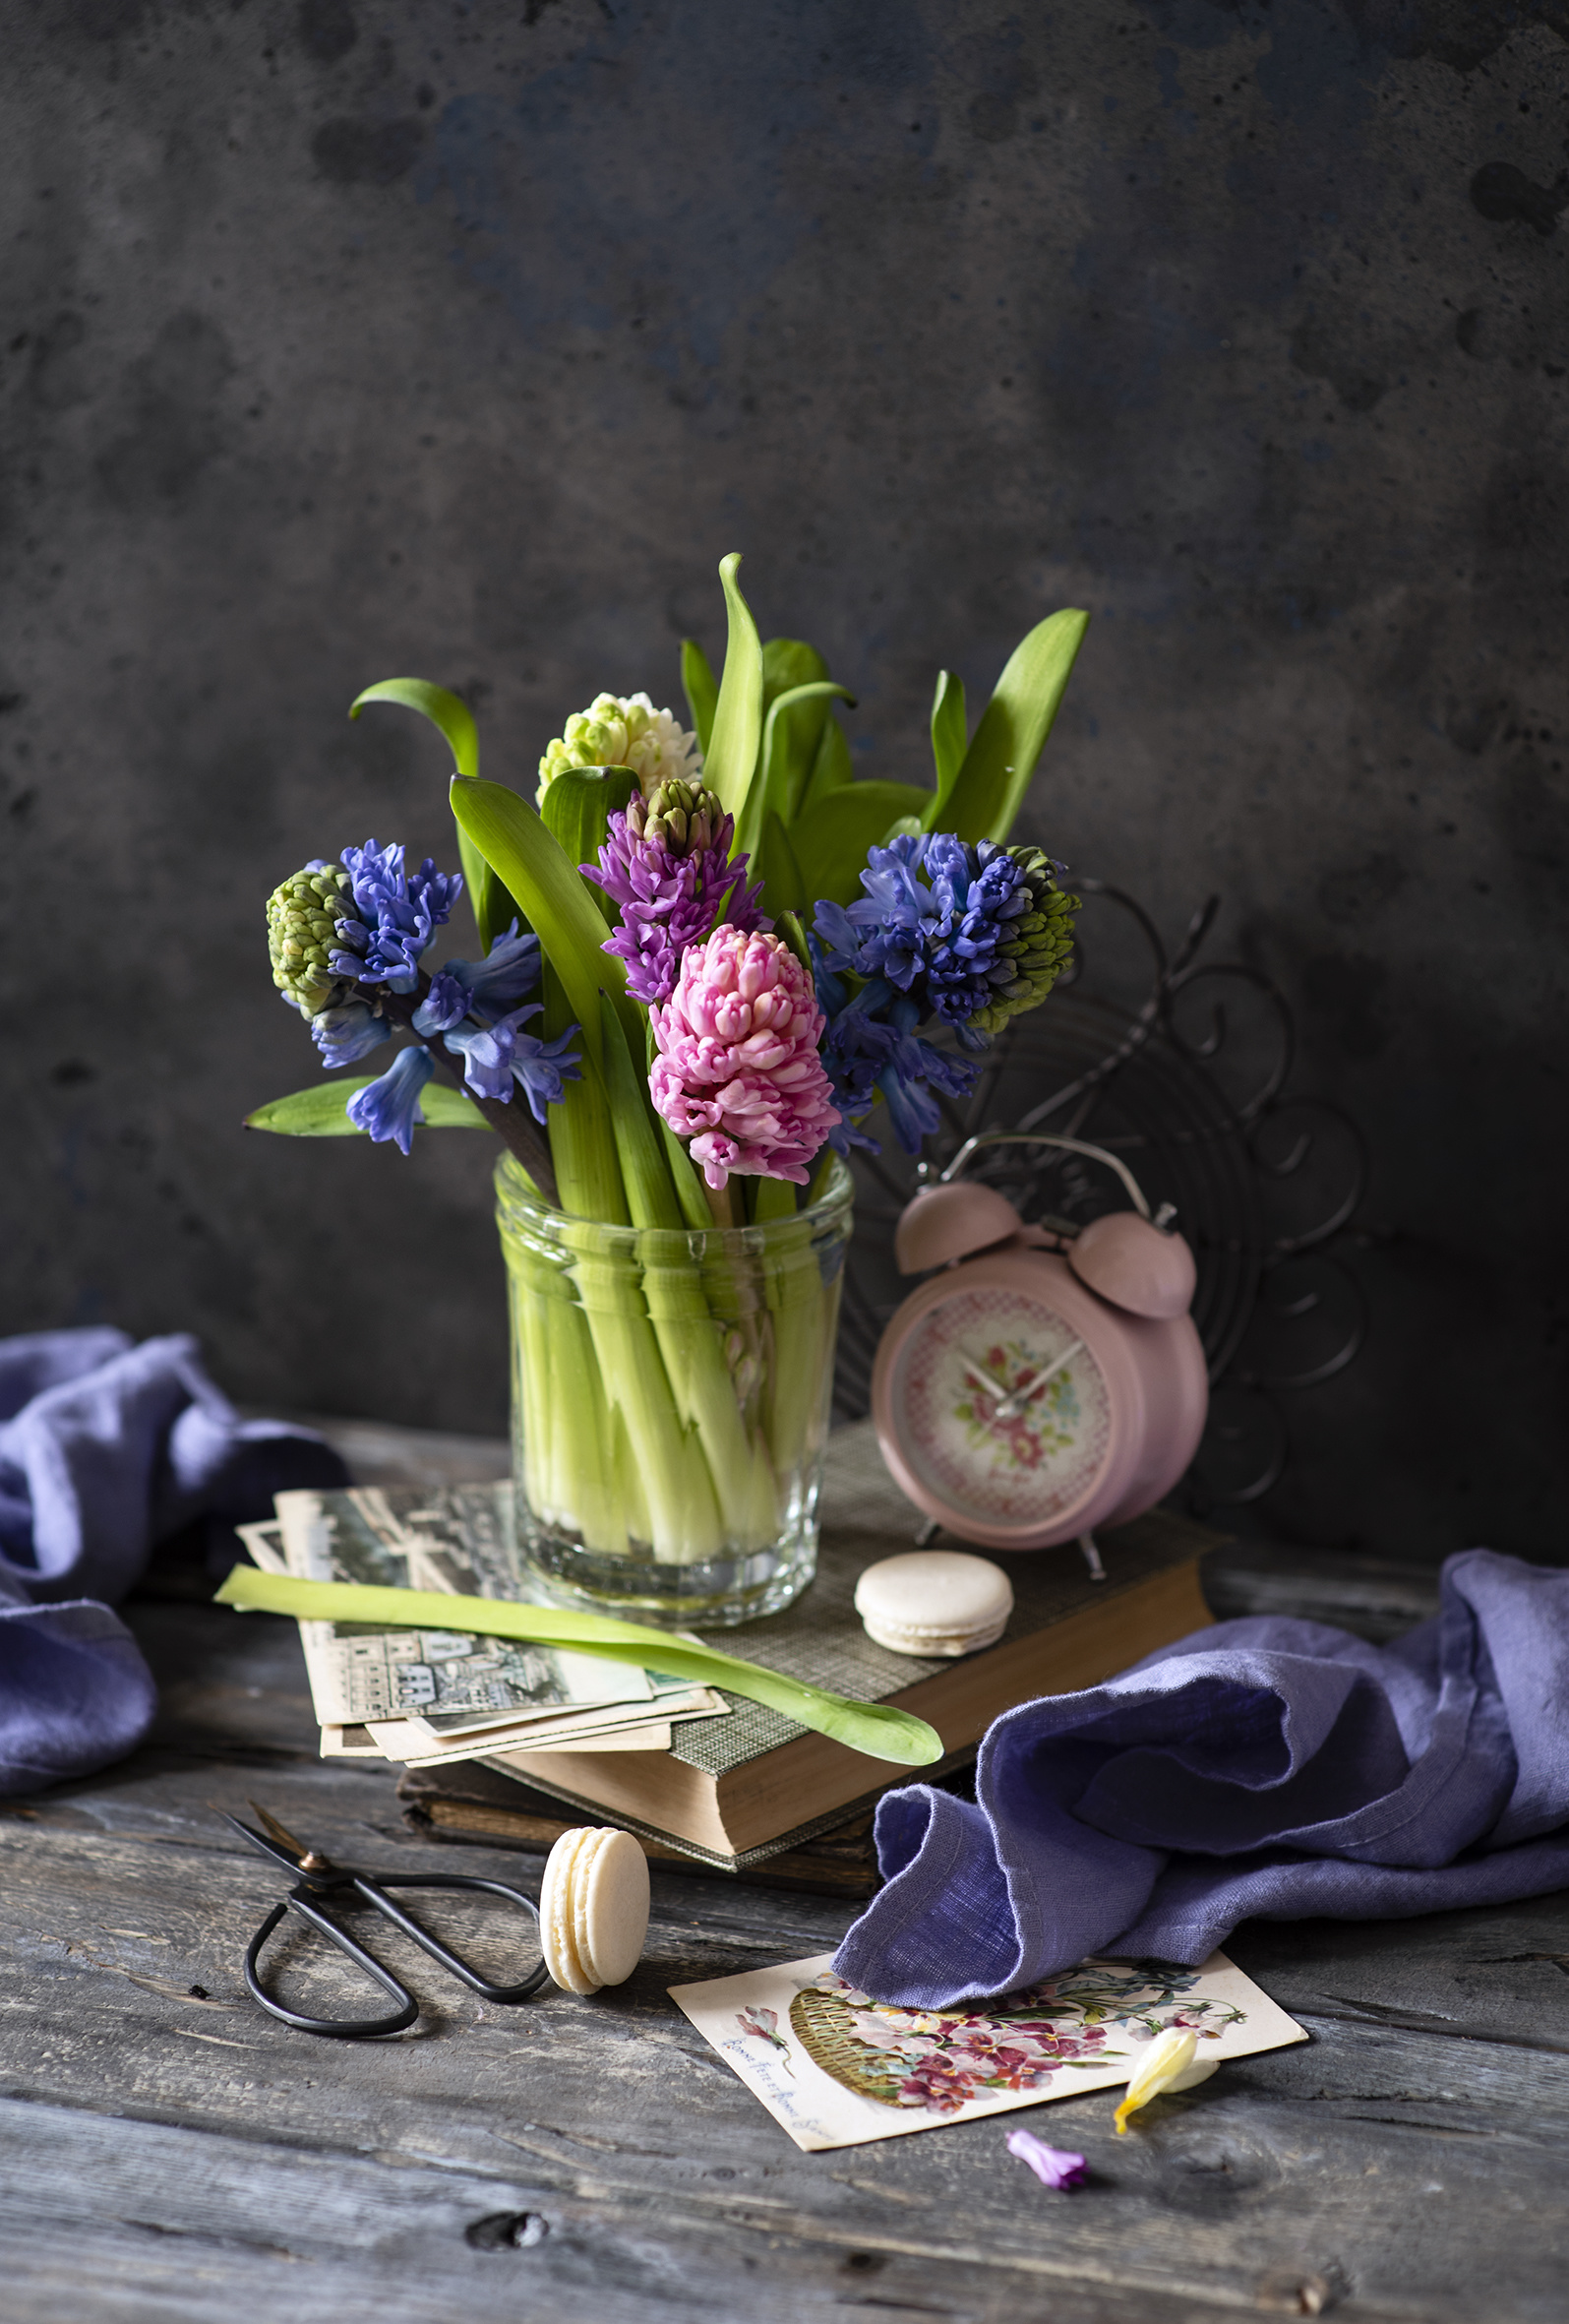 Картинки Макарон Цветы Будильник Гиацинты Натюрморт Доски  для мобильного телефона цветок